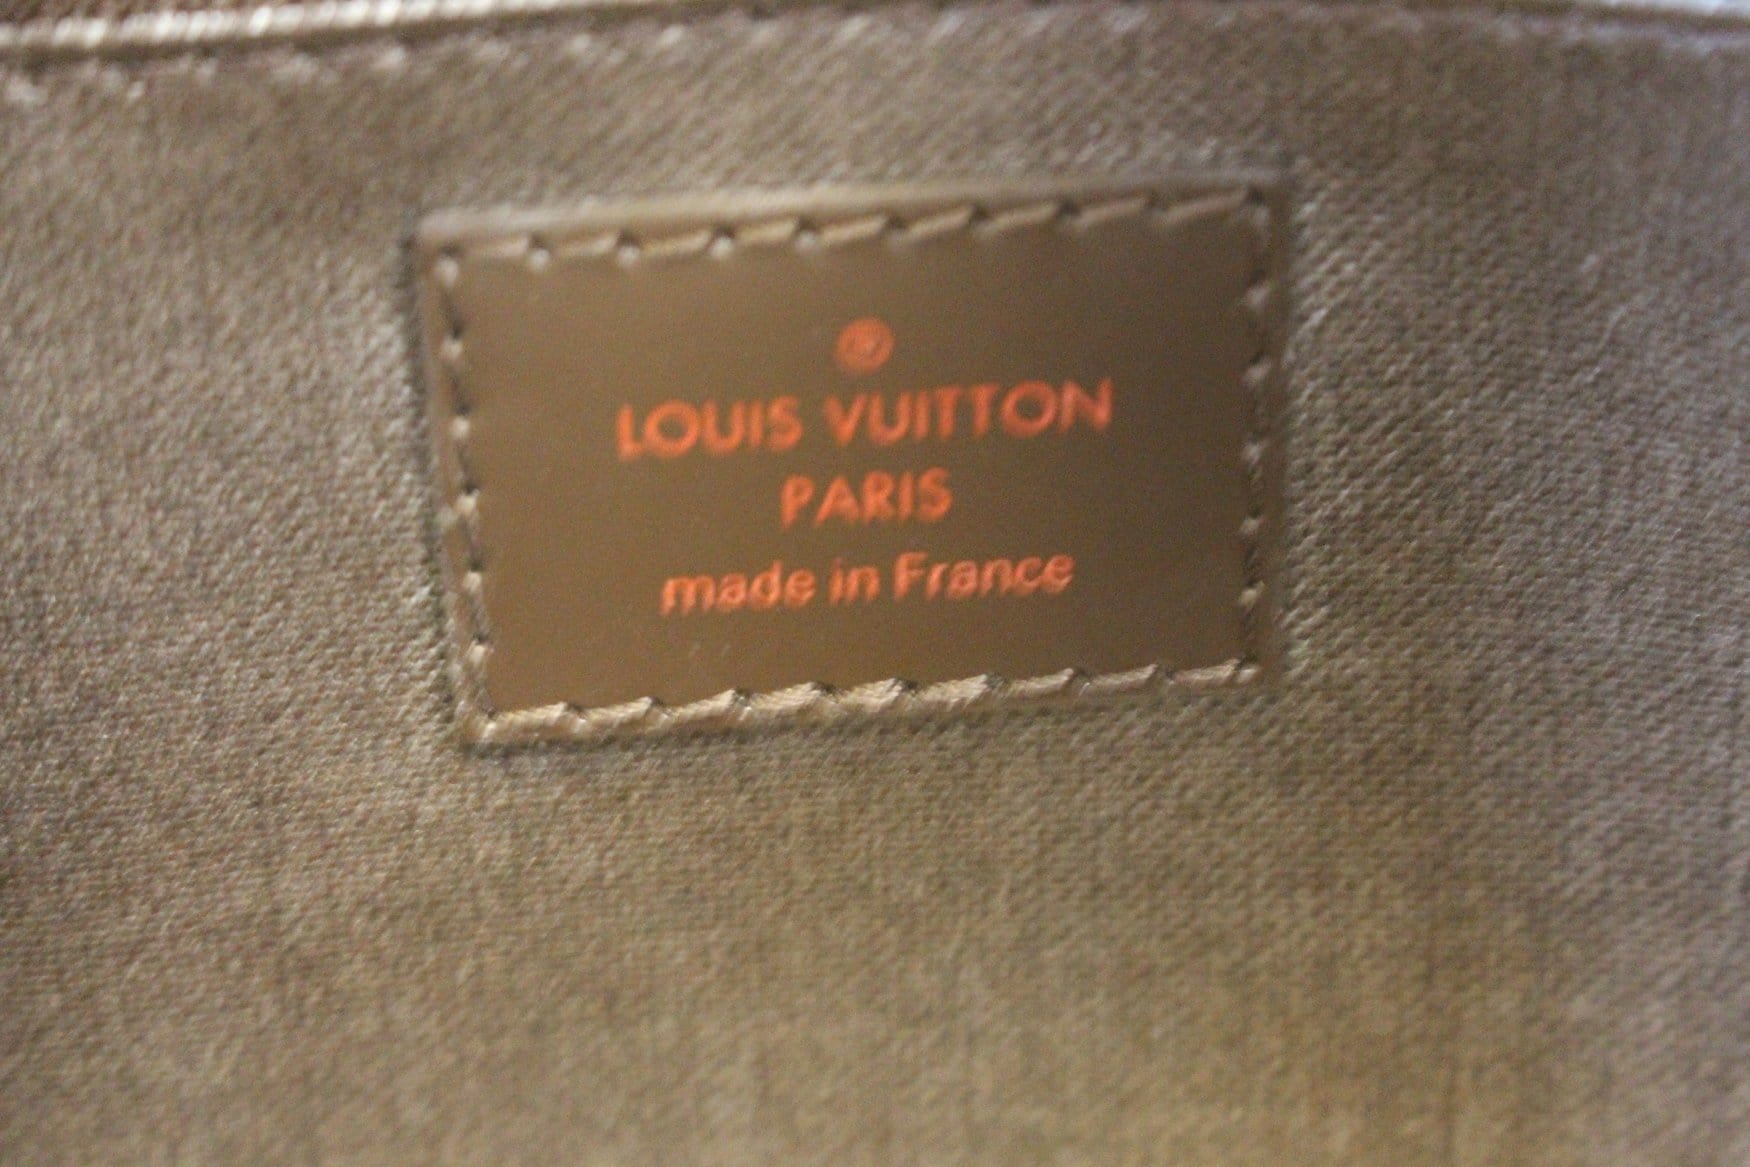 Louis Vuitton Damier Ebene Cosmetic Pouch PM (SHG-S1rm3L) – LuxeDH